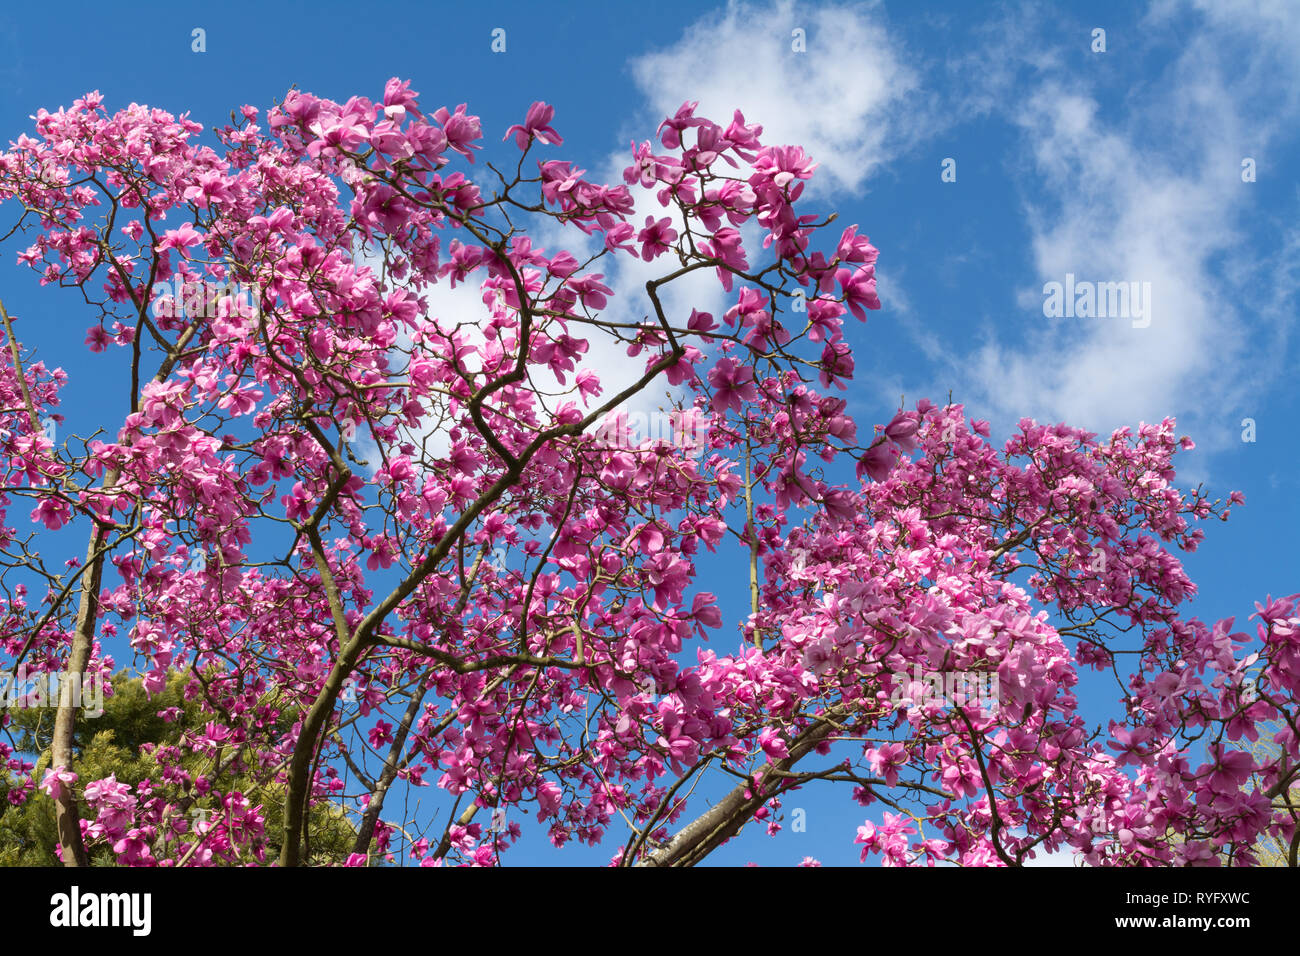 Magnolia sprengeri 'Lanhydrock' arbre avec de belles fleurs rose vif en mars floraison dans un jardin anglais Banque D'Images